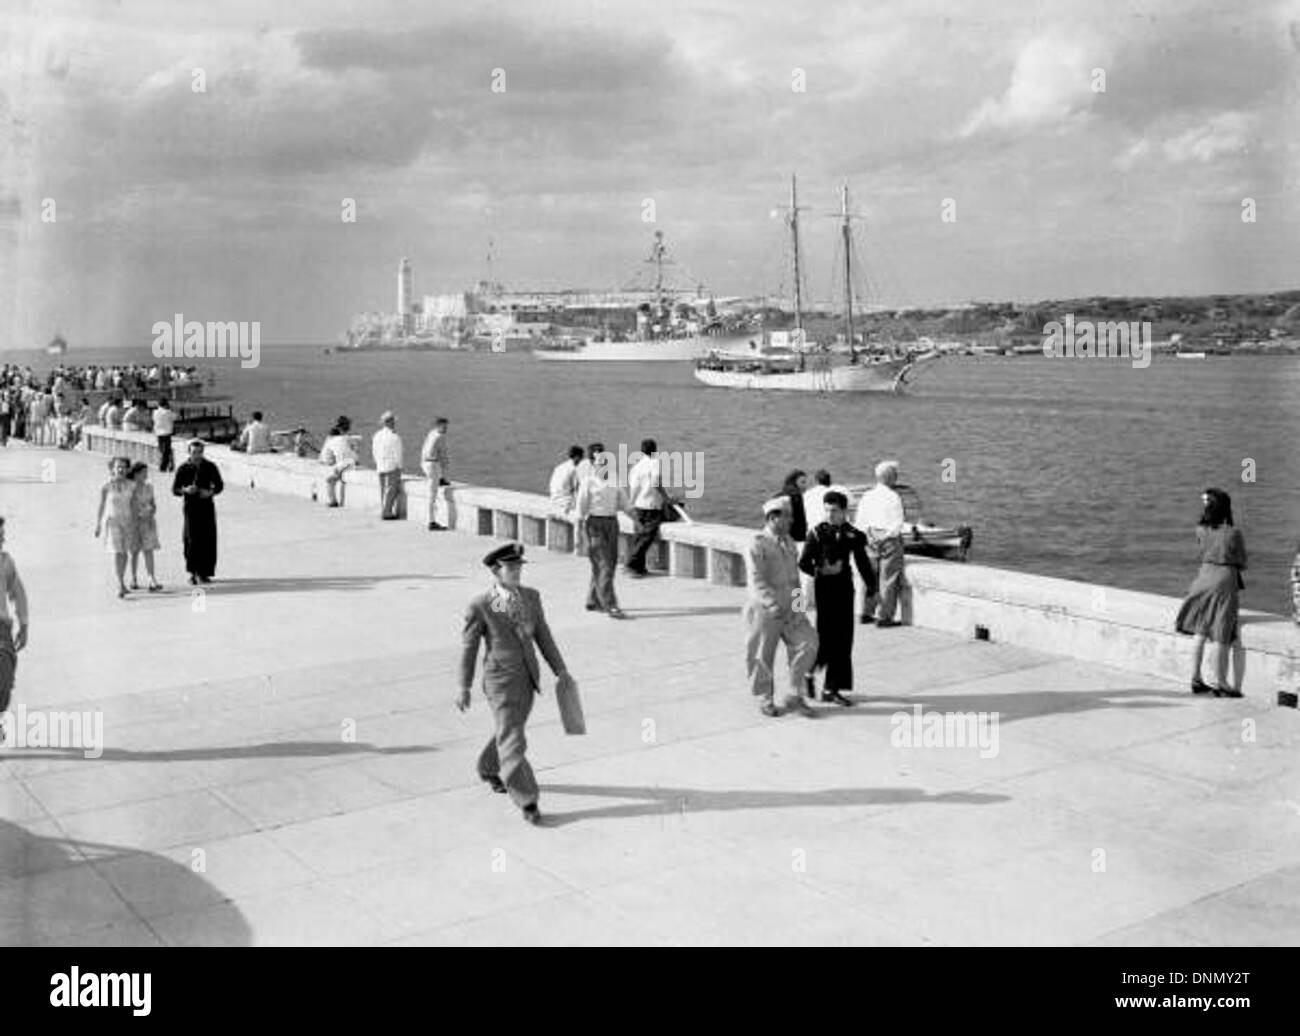 New merchant marine ship entering Havana harbor Stock Photo